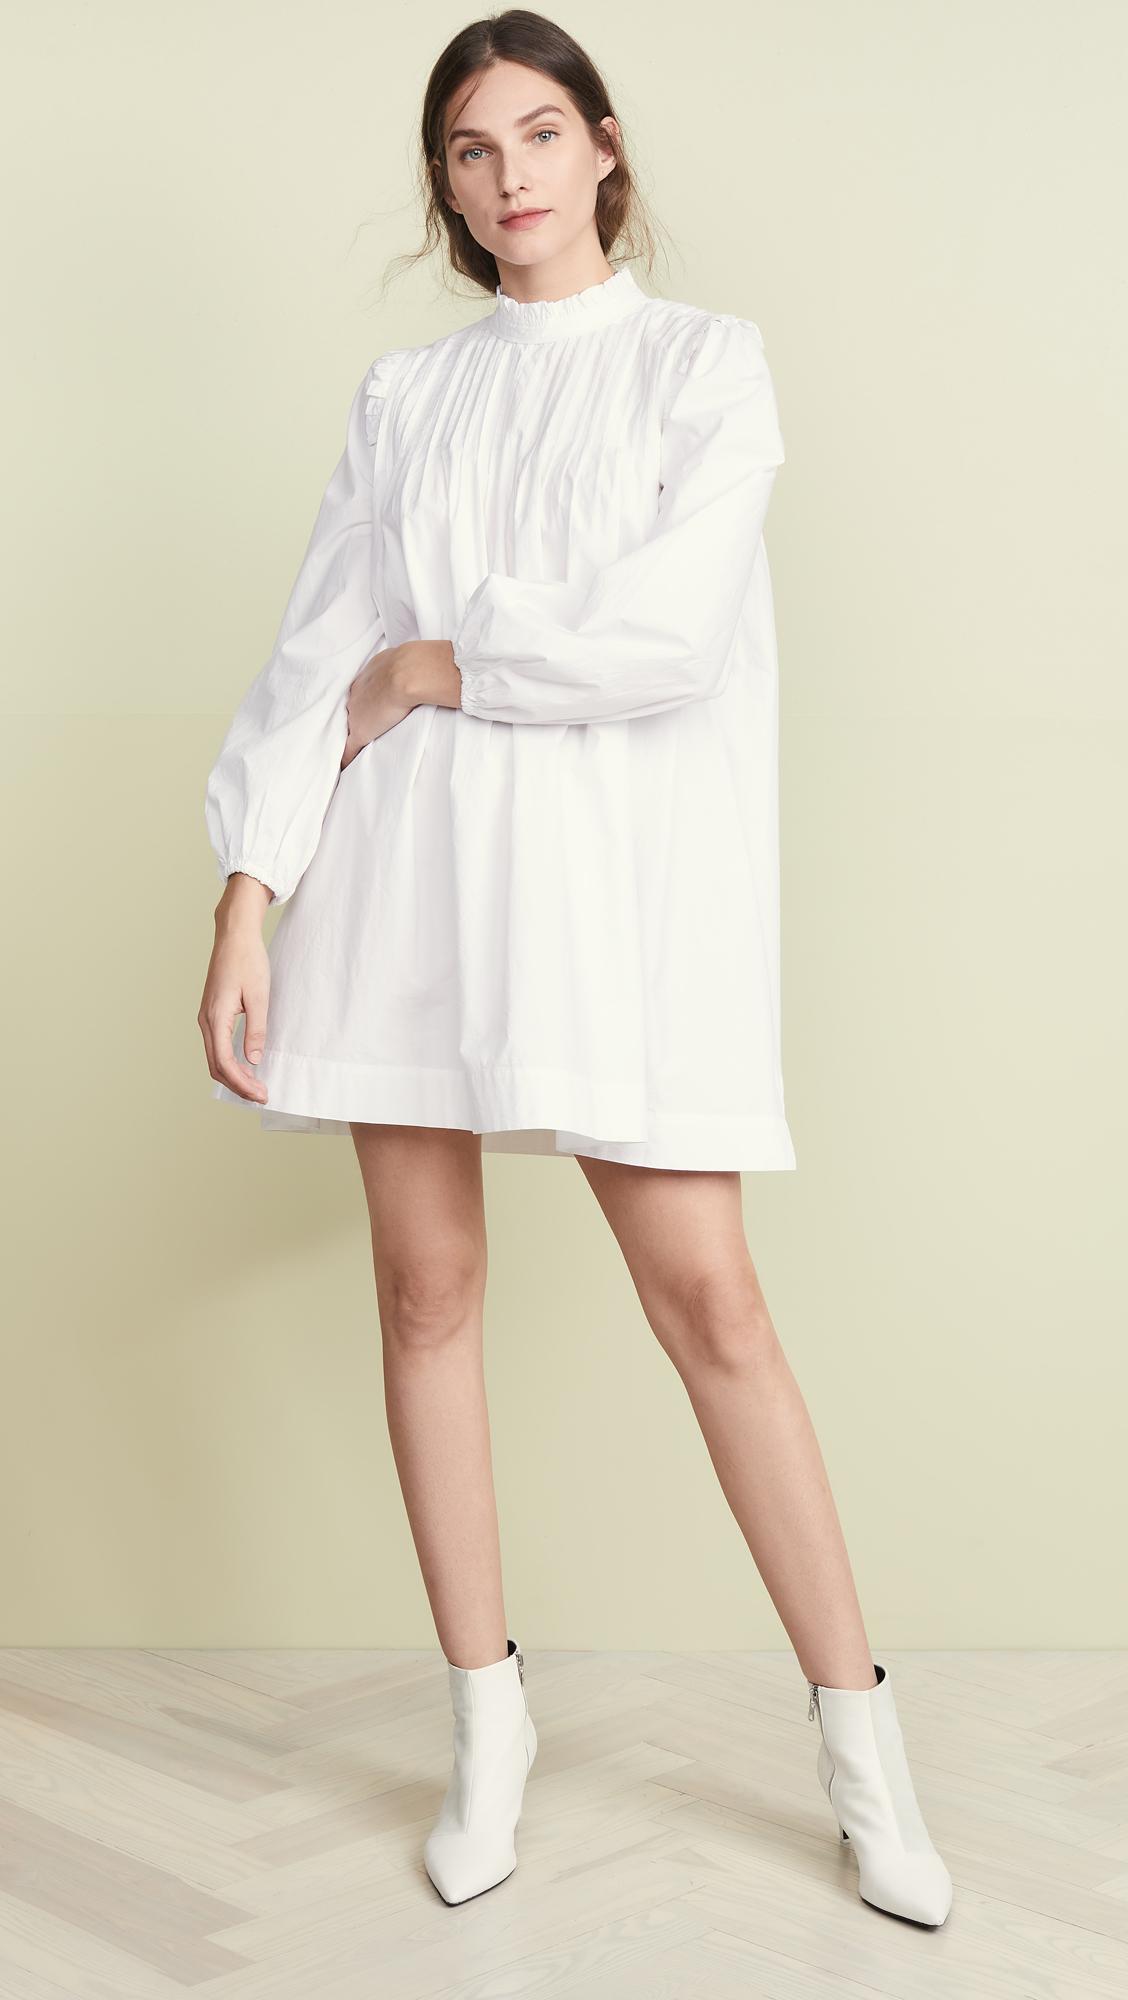 Ganni Cotton Poplin Dress in Bright White (White) - Lyst